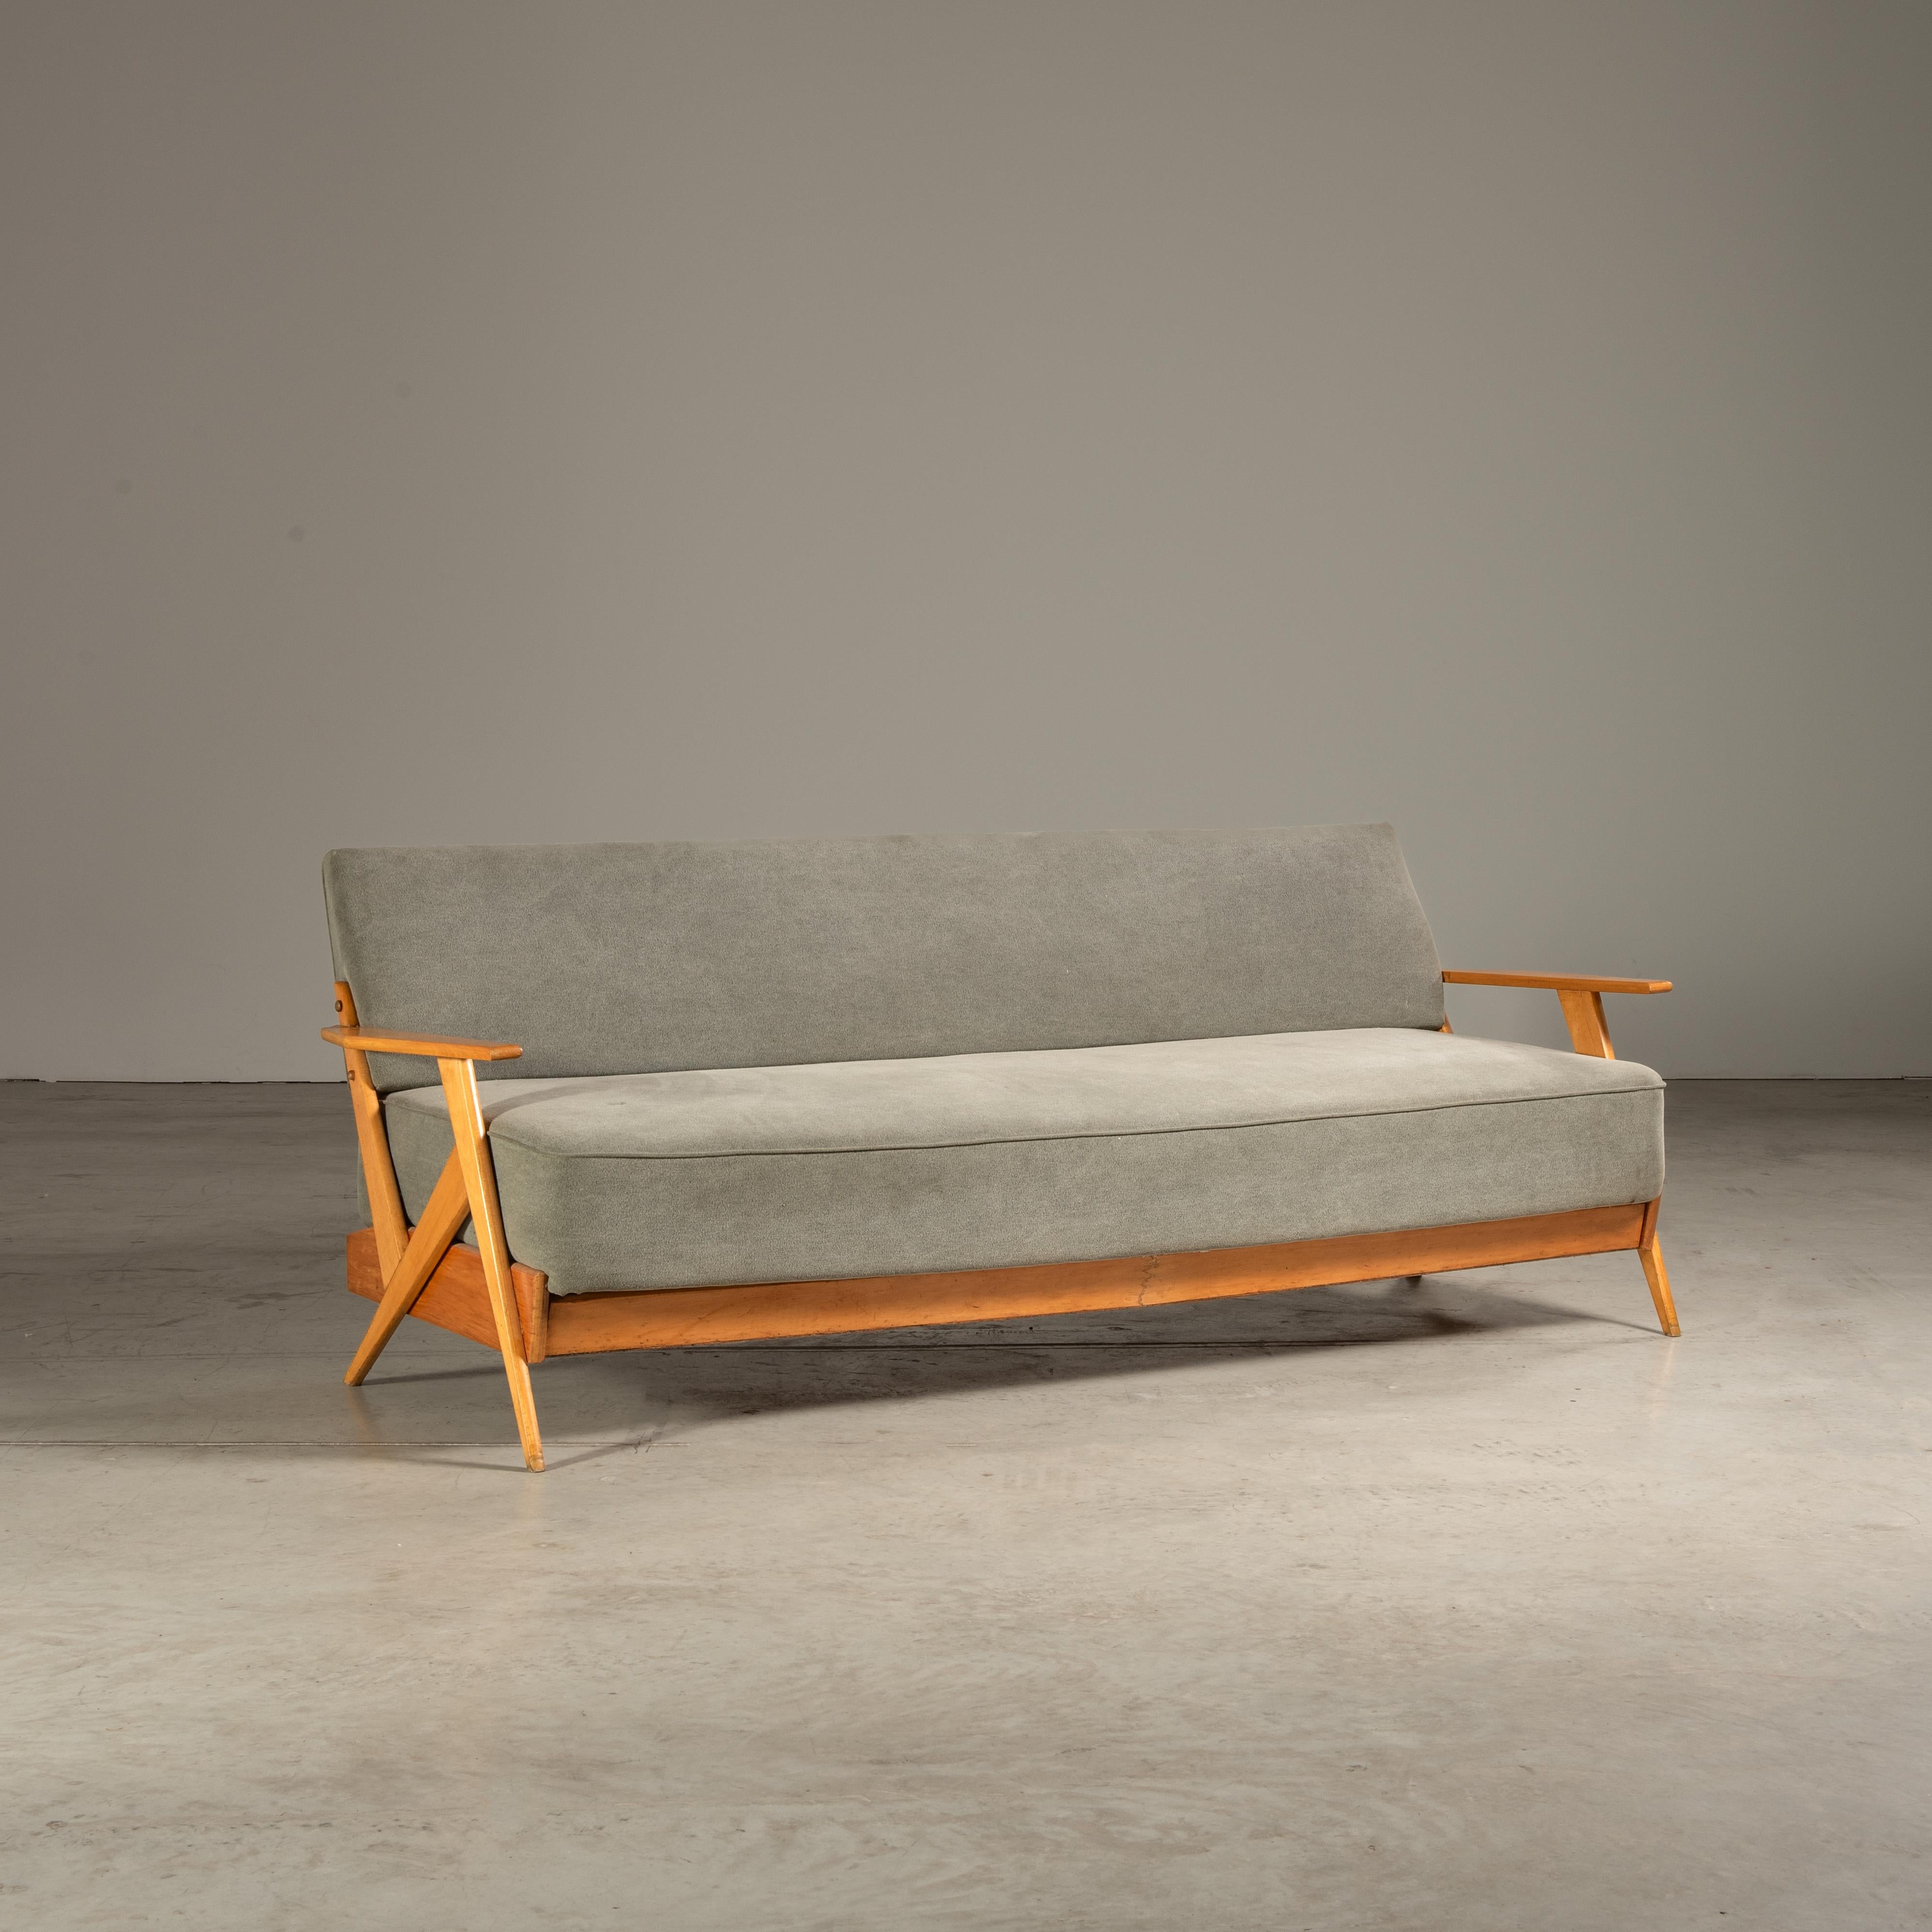 Le canapé conçu par H. Schnicker pour Móveis Artísticos Z est une représentation magistrale du design moderne brésilien du milieu du siècle dernier. Il allie harmonieusement les sensibilités contemporaines à la chaleur et à la clarté structurelle